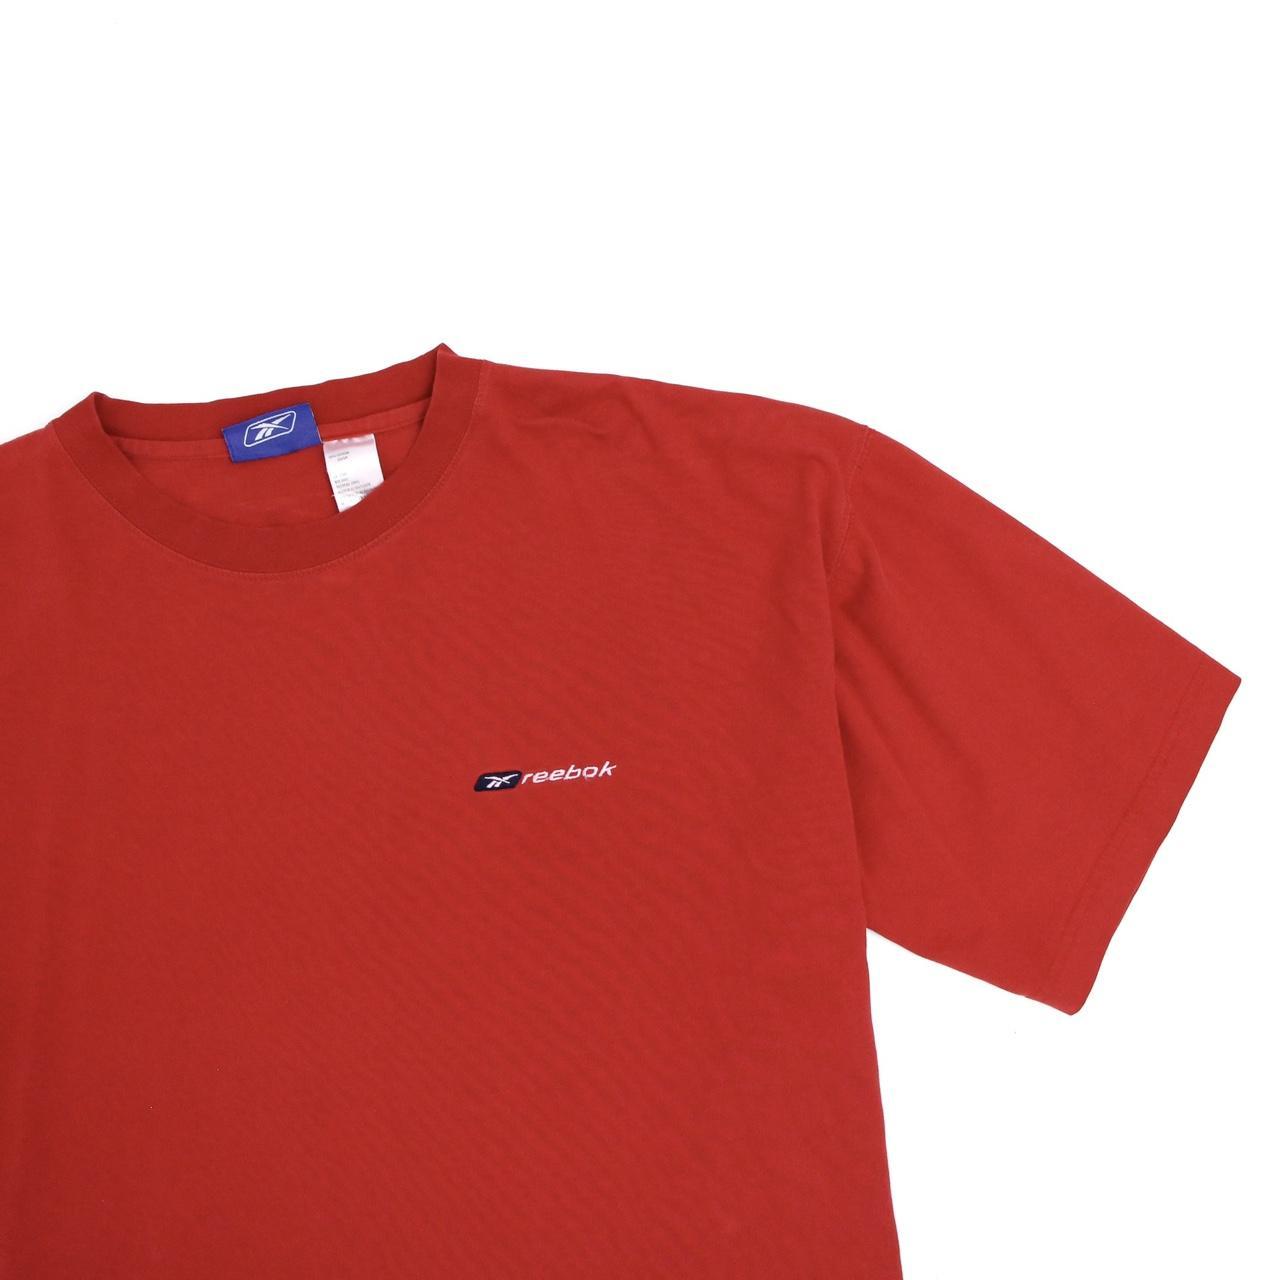 Reebok Men's Red T-shirt | Depop